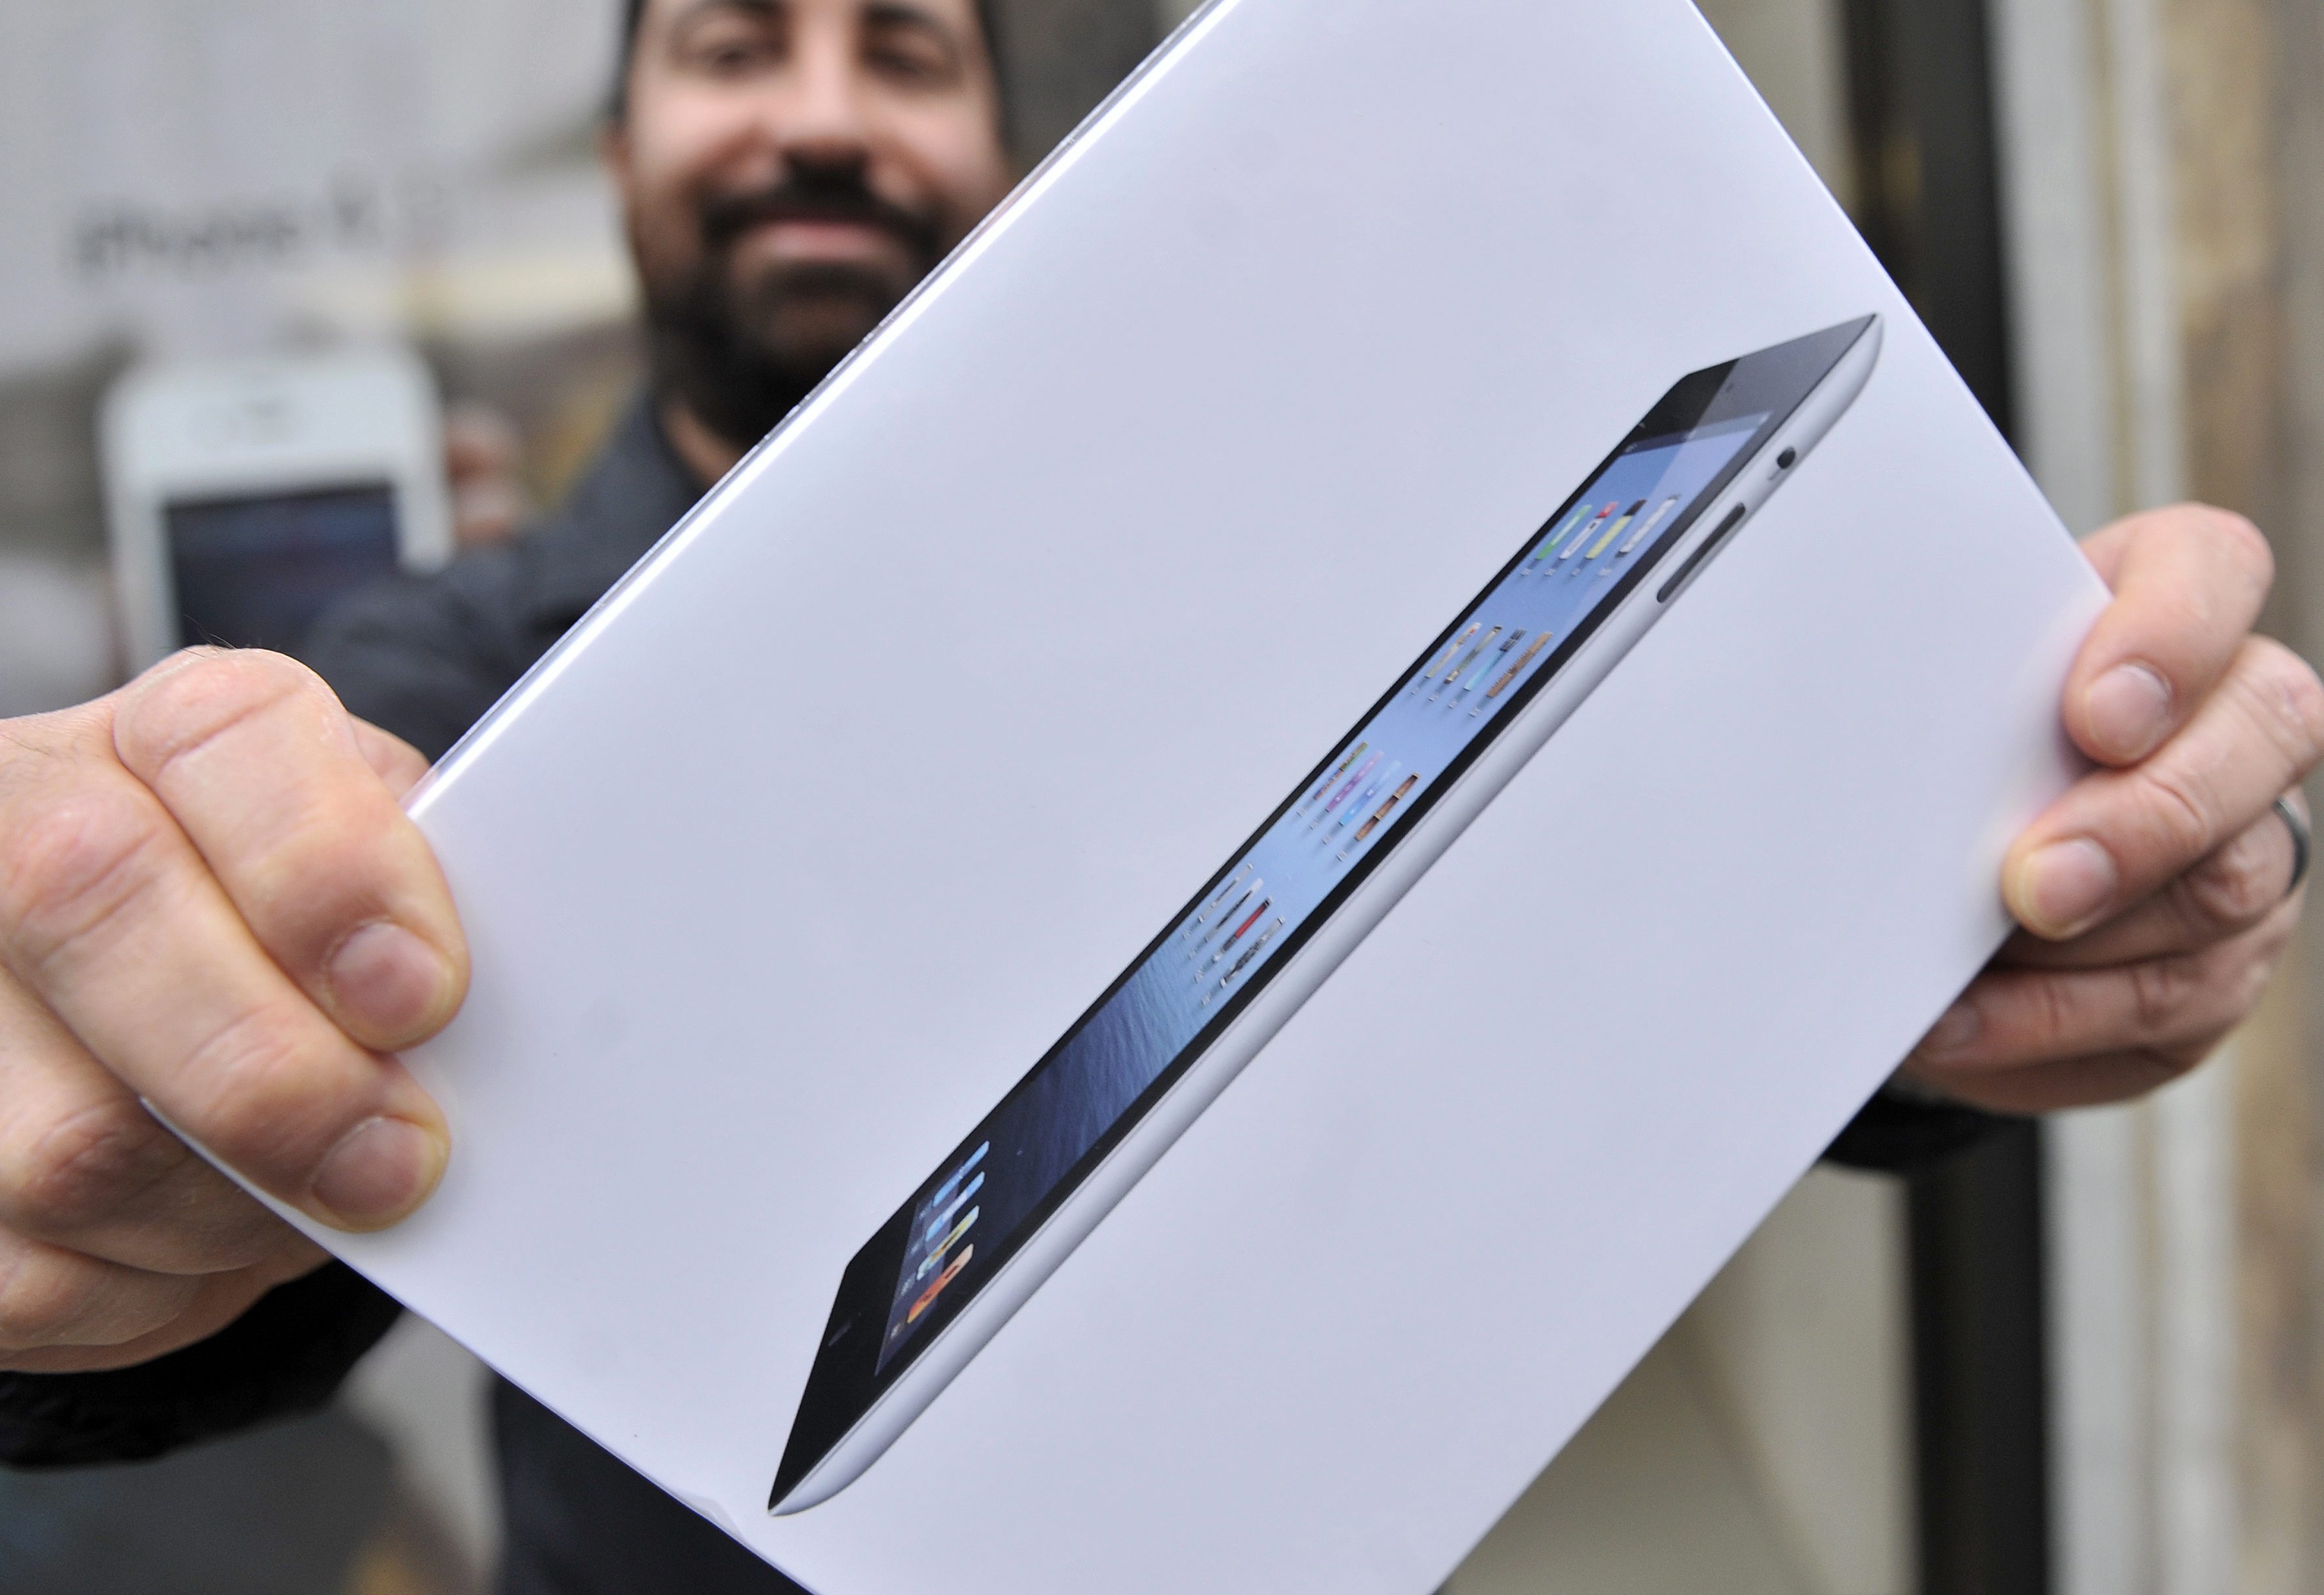 Apple brengt halverwege oktober waarschijnlijk een nieuwe generatie iPads op de markt. Dat meldt persbureau Bloomberg op basis van een ingewijde bij het techconcern. Naast nieuwe versies van de iPad Air en iPad Mini, zou Apple werken aan een tablet met een scherm van 12,9 inches. Dat is een stuk groter dan de huidige iPad Air (9,7 inch) en de iPad Mini (7,9 inch). Door meer keus te bieden hoopt Apple de iPad-verkopen een impuls te geven. Het aantal verkochte iPads neemt al twee kwartalen op rij af in vergelijking met dezelfde periode een jaar eerder. Eén van de redenen daarvoor is dat smartphones steeds groter worden. De huidige topmodellen met Android hebben schermen tussen de 5 en 6 inch. Ook Apple speelt in op deze trend en onthulde vorige week twee nieuwe iPhones met grotere schermen. Tablets weer aantrekkelijk maken De grotere smartphones gaan ten koste van de tablet-verkopen, met name van goedkopere modellen van 7 en 8 inch. Met een grotere iPad breidt Apple de bovenkant van de markt uit en hoopt zo een nieuwe groep consumenten aan te spreken. Microsoft deed onlangs een vergelijkbare zet door hun Surface 3-tablet van een 12 inch-scherm te voorzien. Daarmee springt het concern uit Redmond in het gat tussen de tablet en laptop. Lees ook 7 redenen waarom we minder tablets kopen Dit zegt de Apple Watch over het verschil tussen Apple en Google Dit gaat de iPhone 6 in Nederland kosten